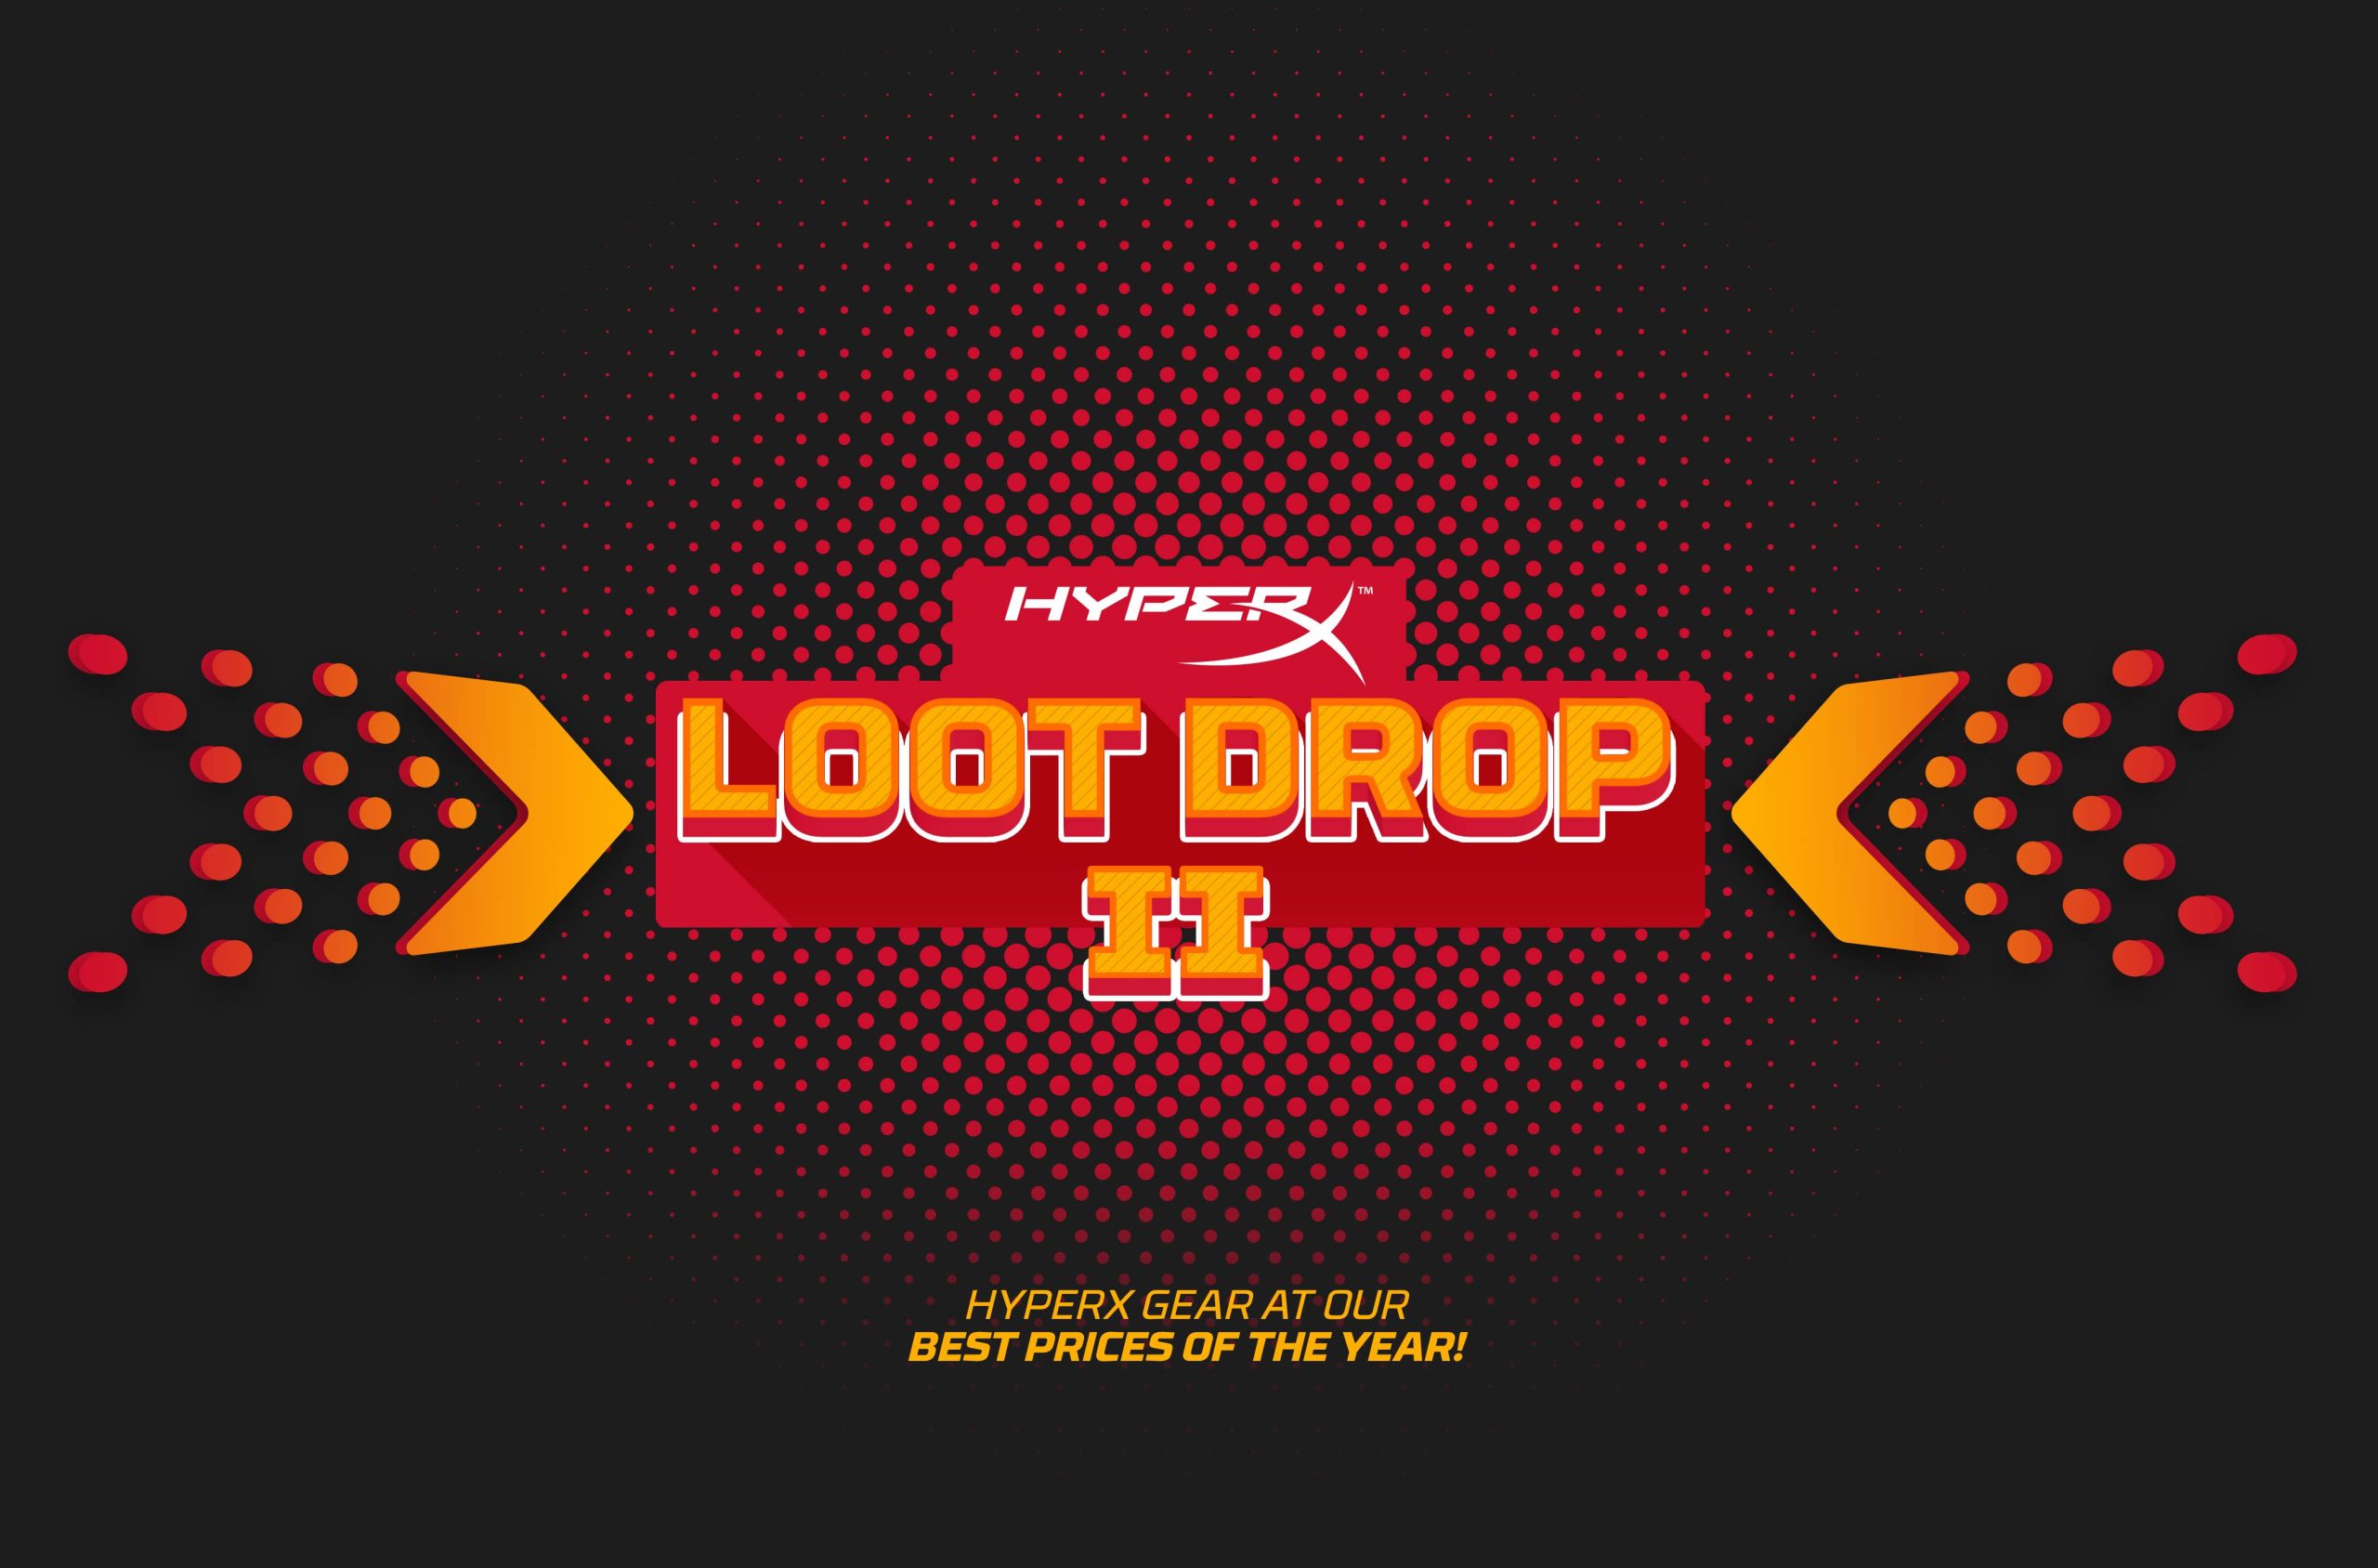 Foto de HyperX Loot Drop II: última oportunidad para participar